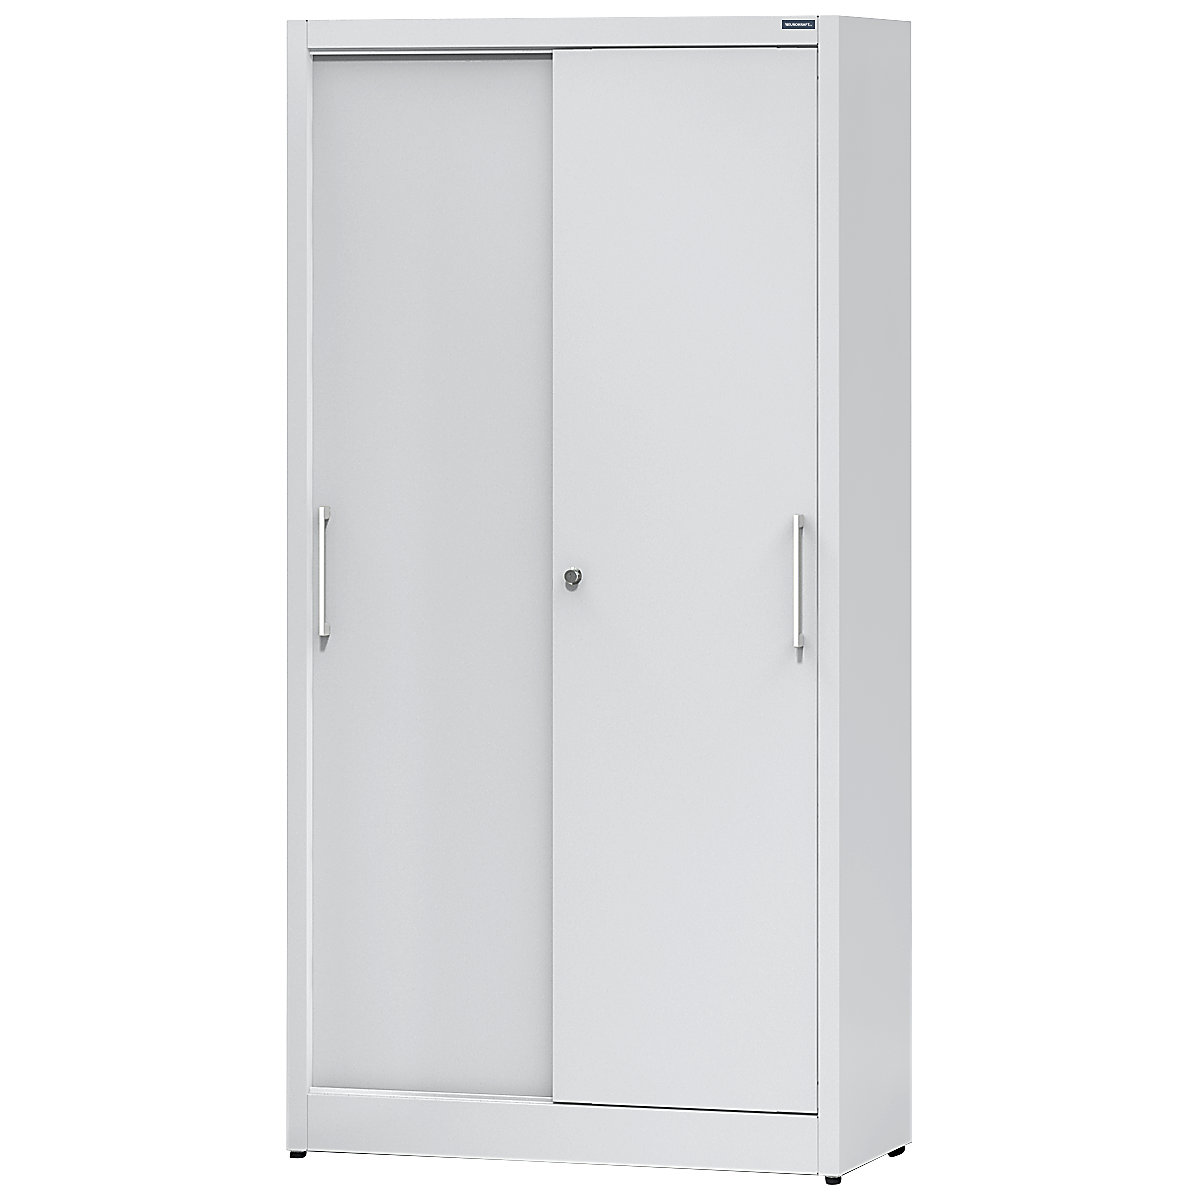 Sliding door cupboard, height 1950 mm – eurokraft pro, with 4 shelves, width 1000 mm, depth 500 mm, doors in light grey RAL 7035-9